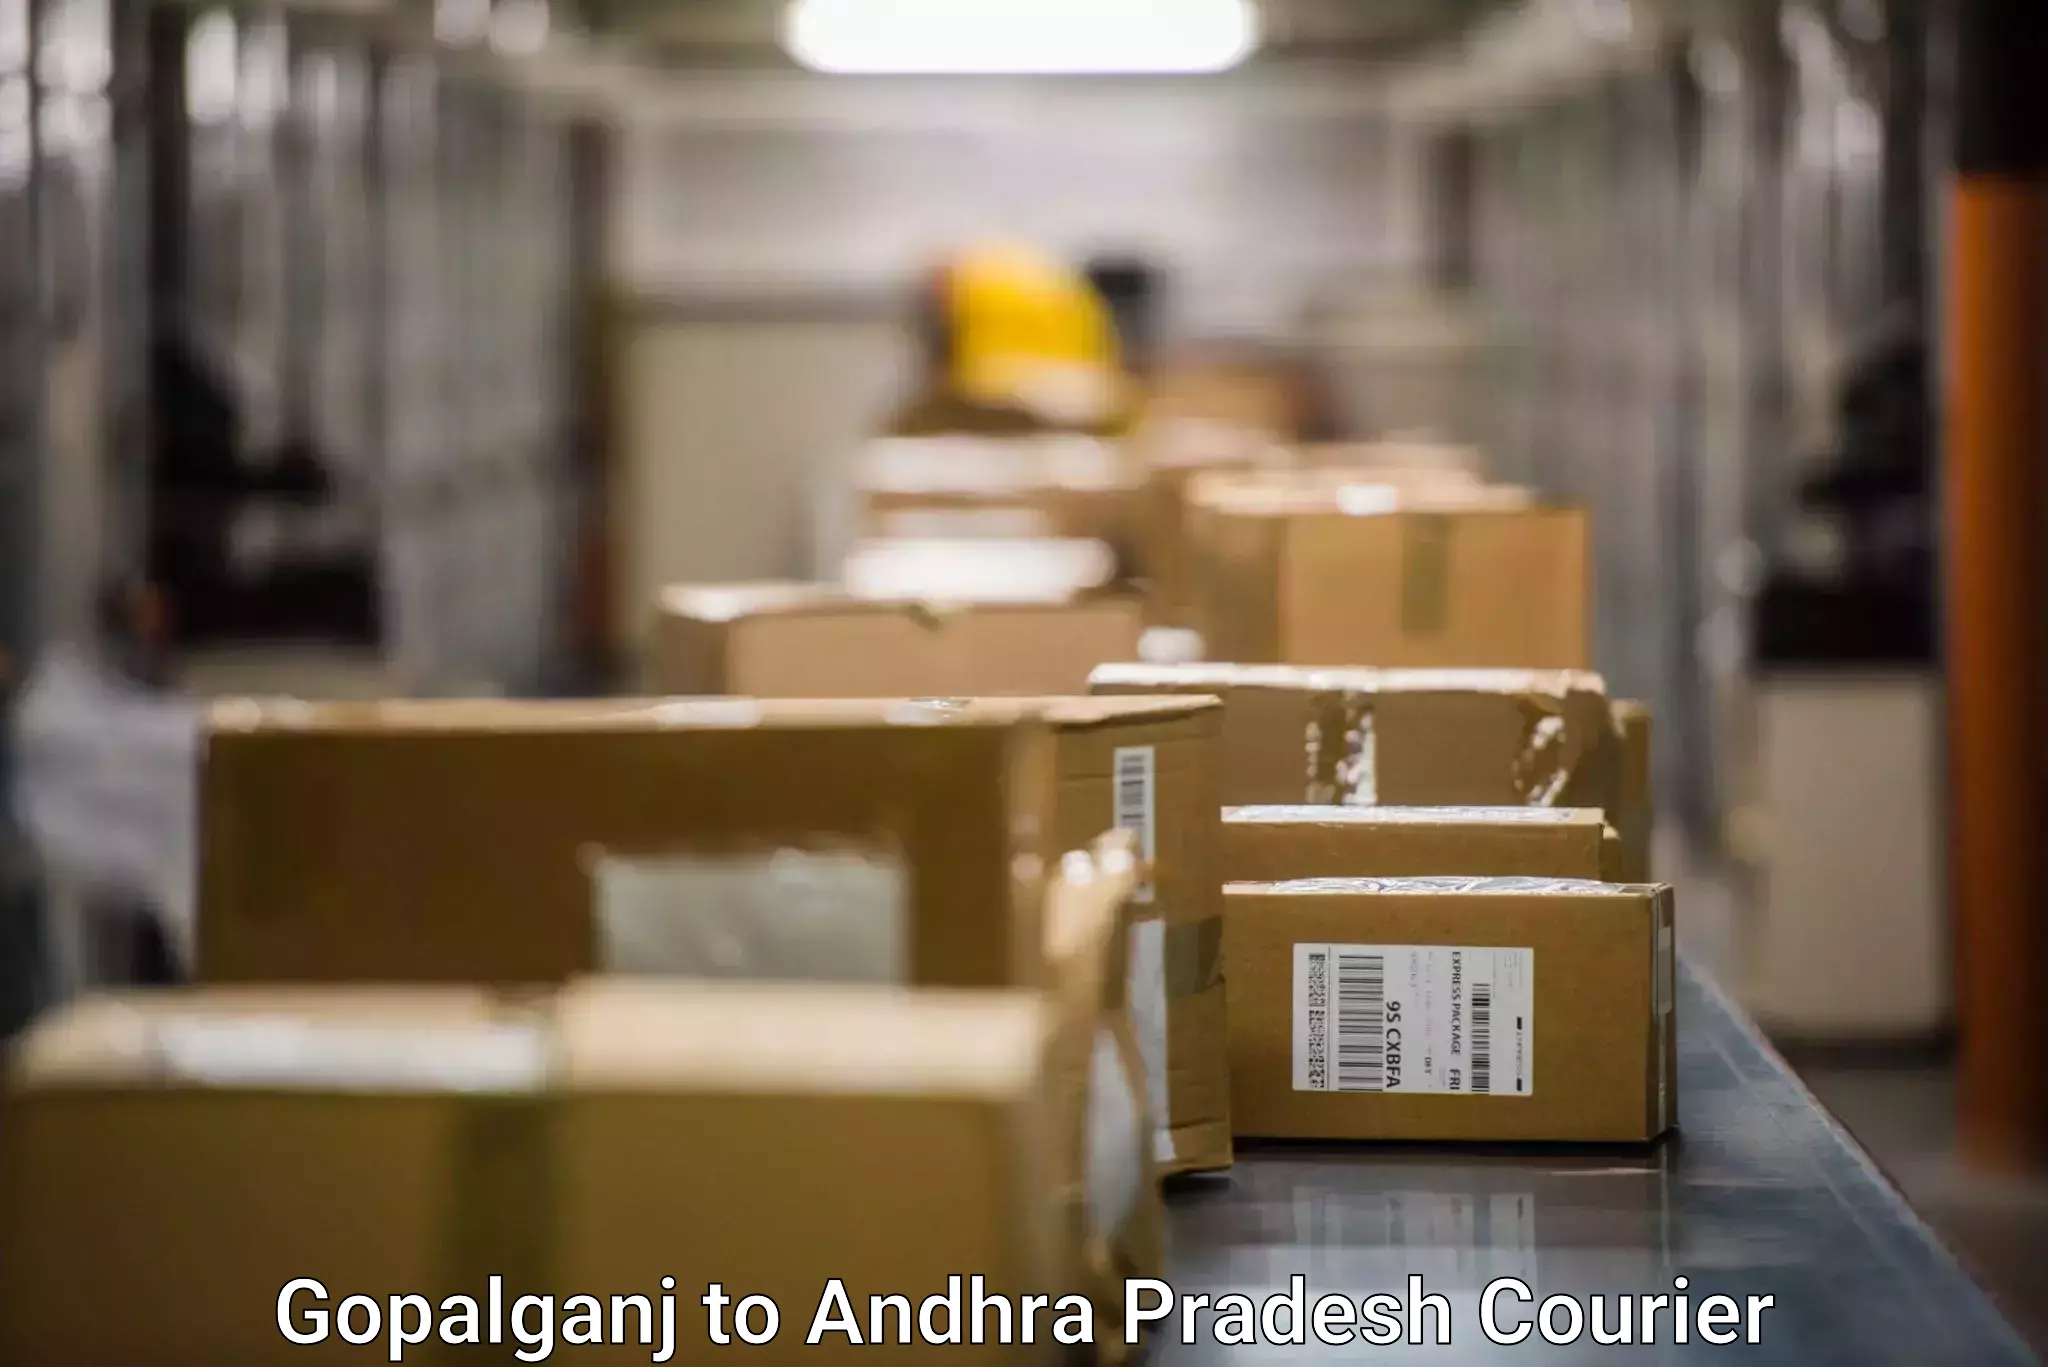 Ocean freight courier Gopalganj to Madakasira